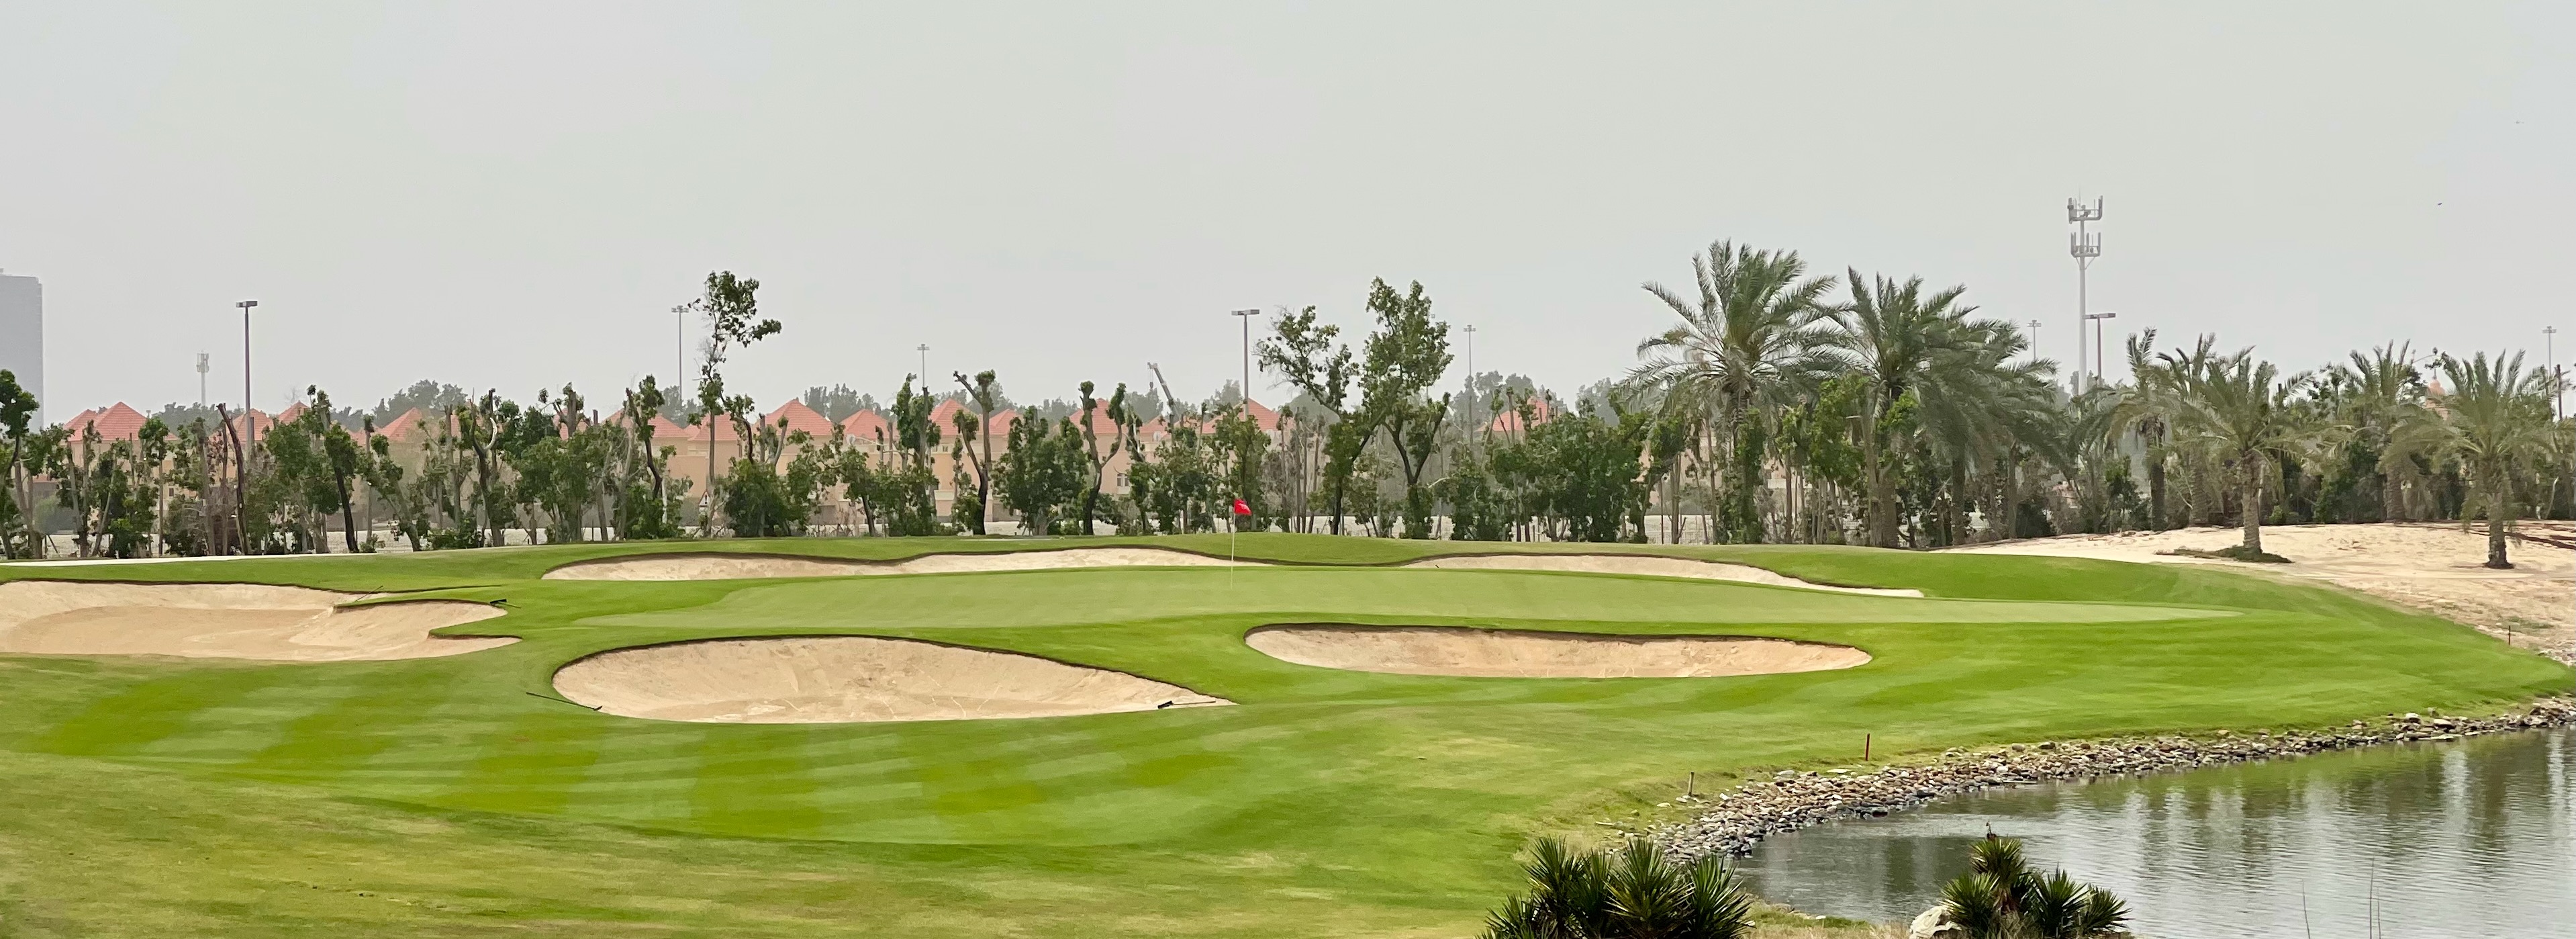 Abu Dhabi GC- hole 4